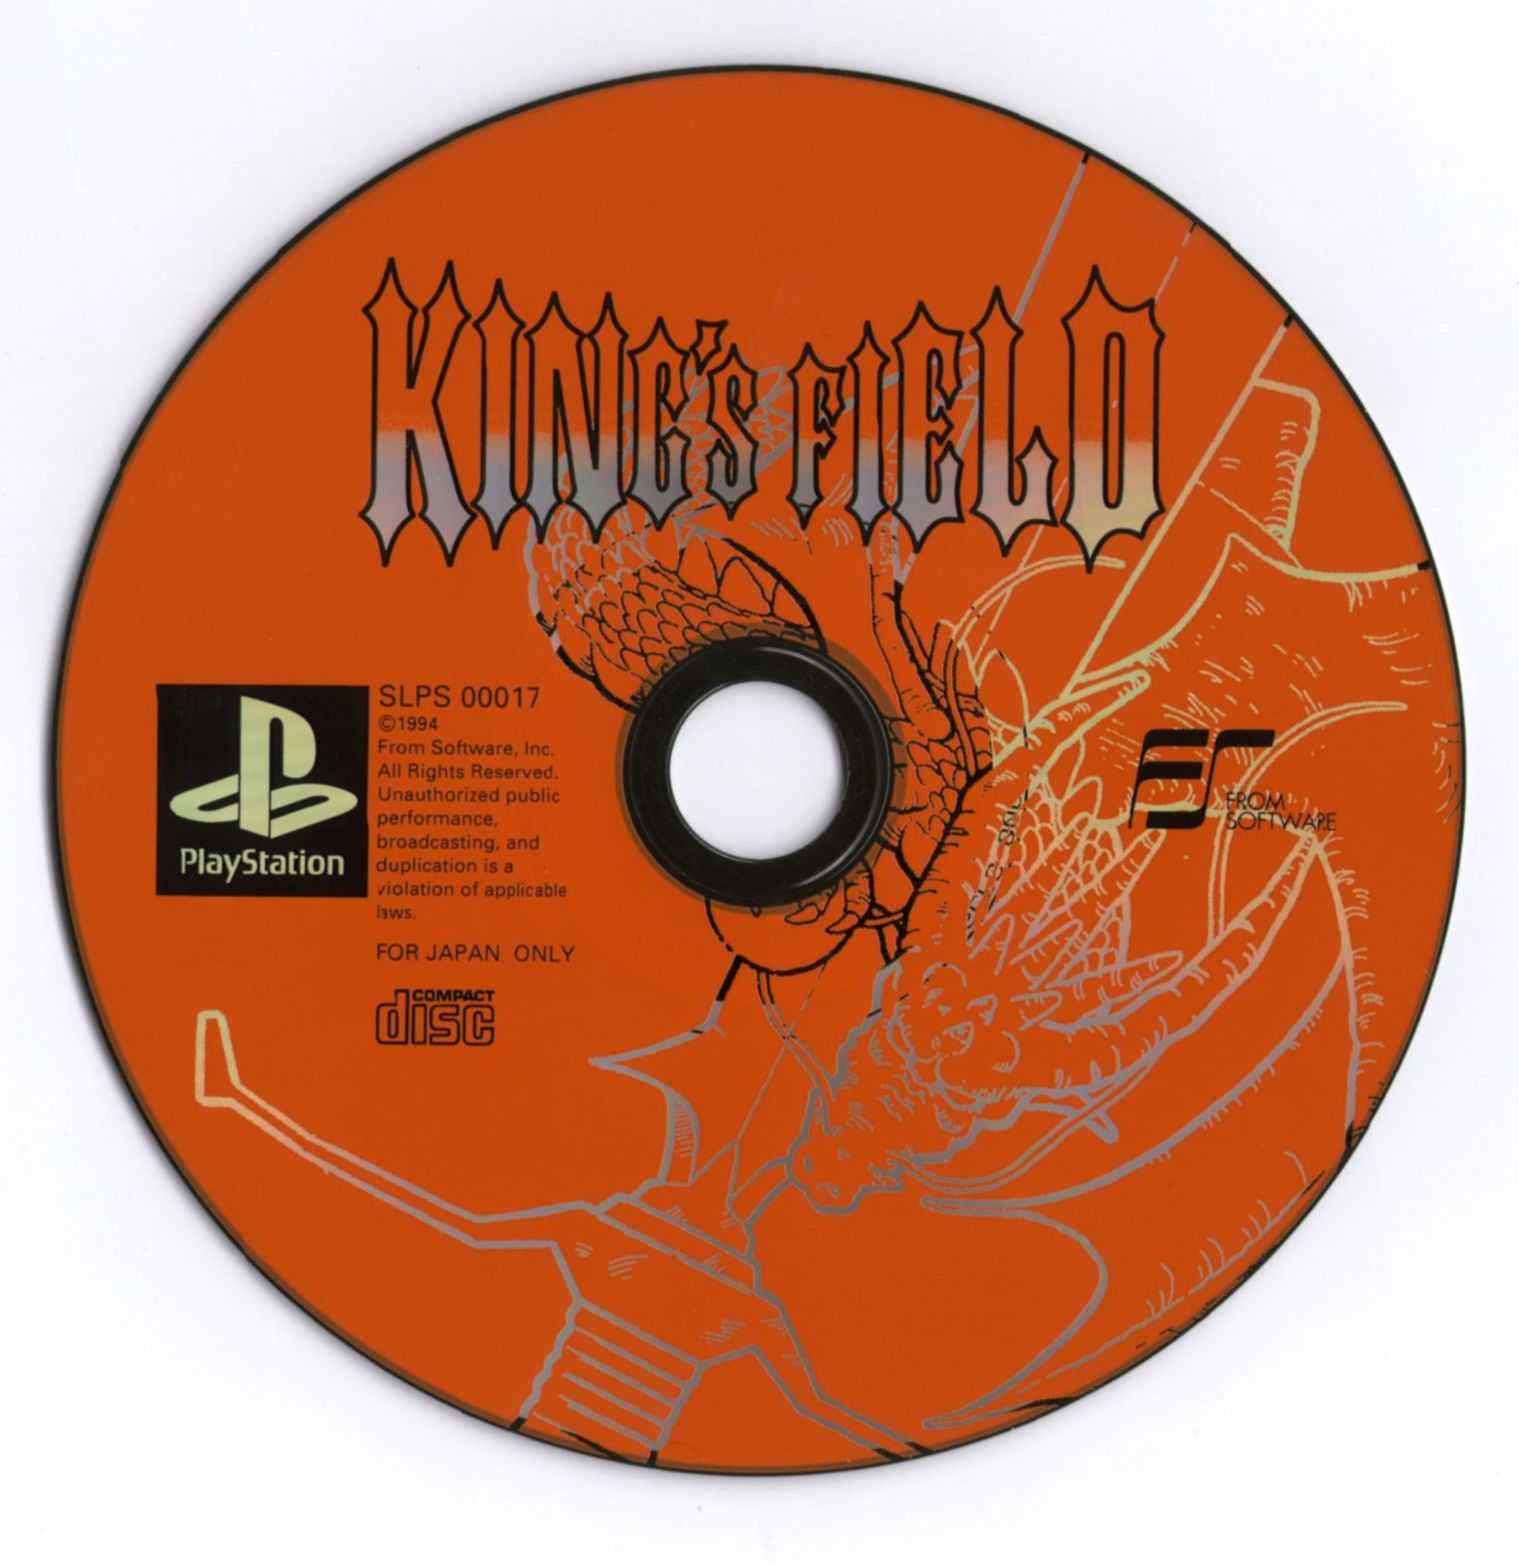 download kings field psx